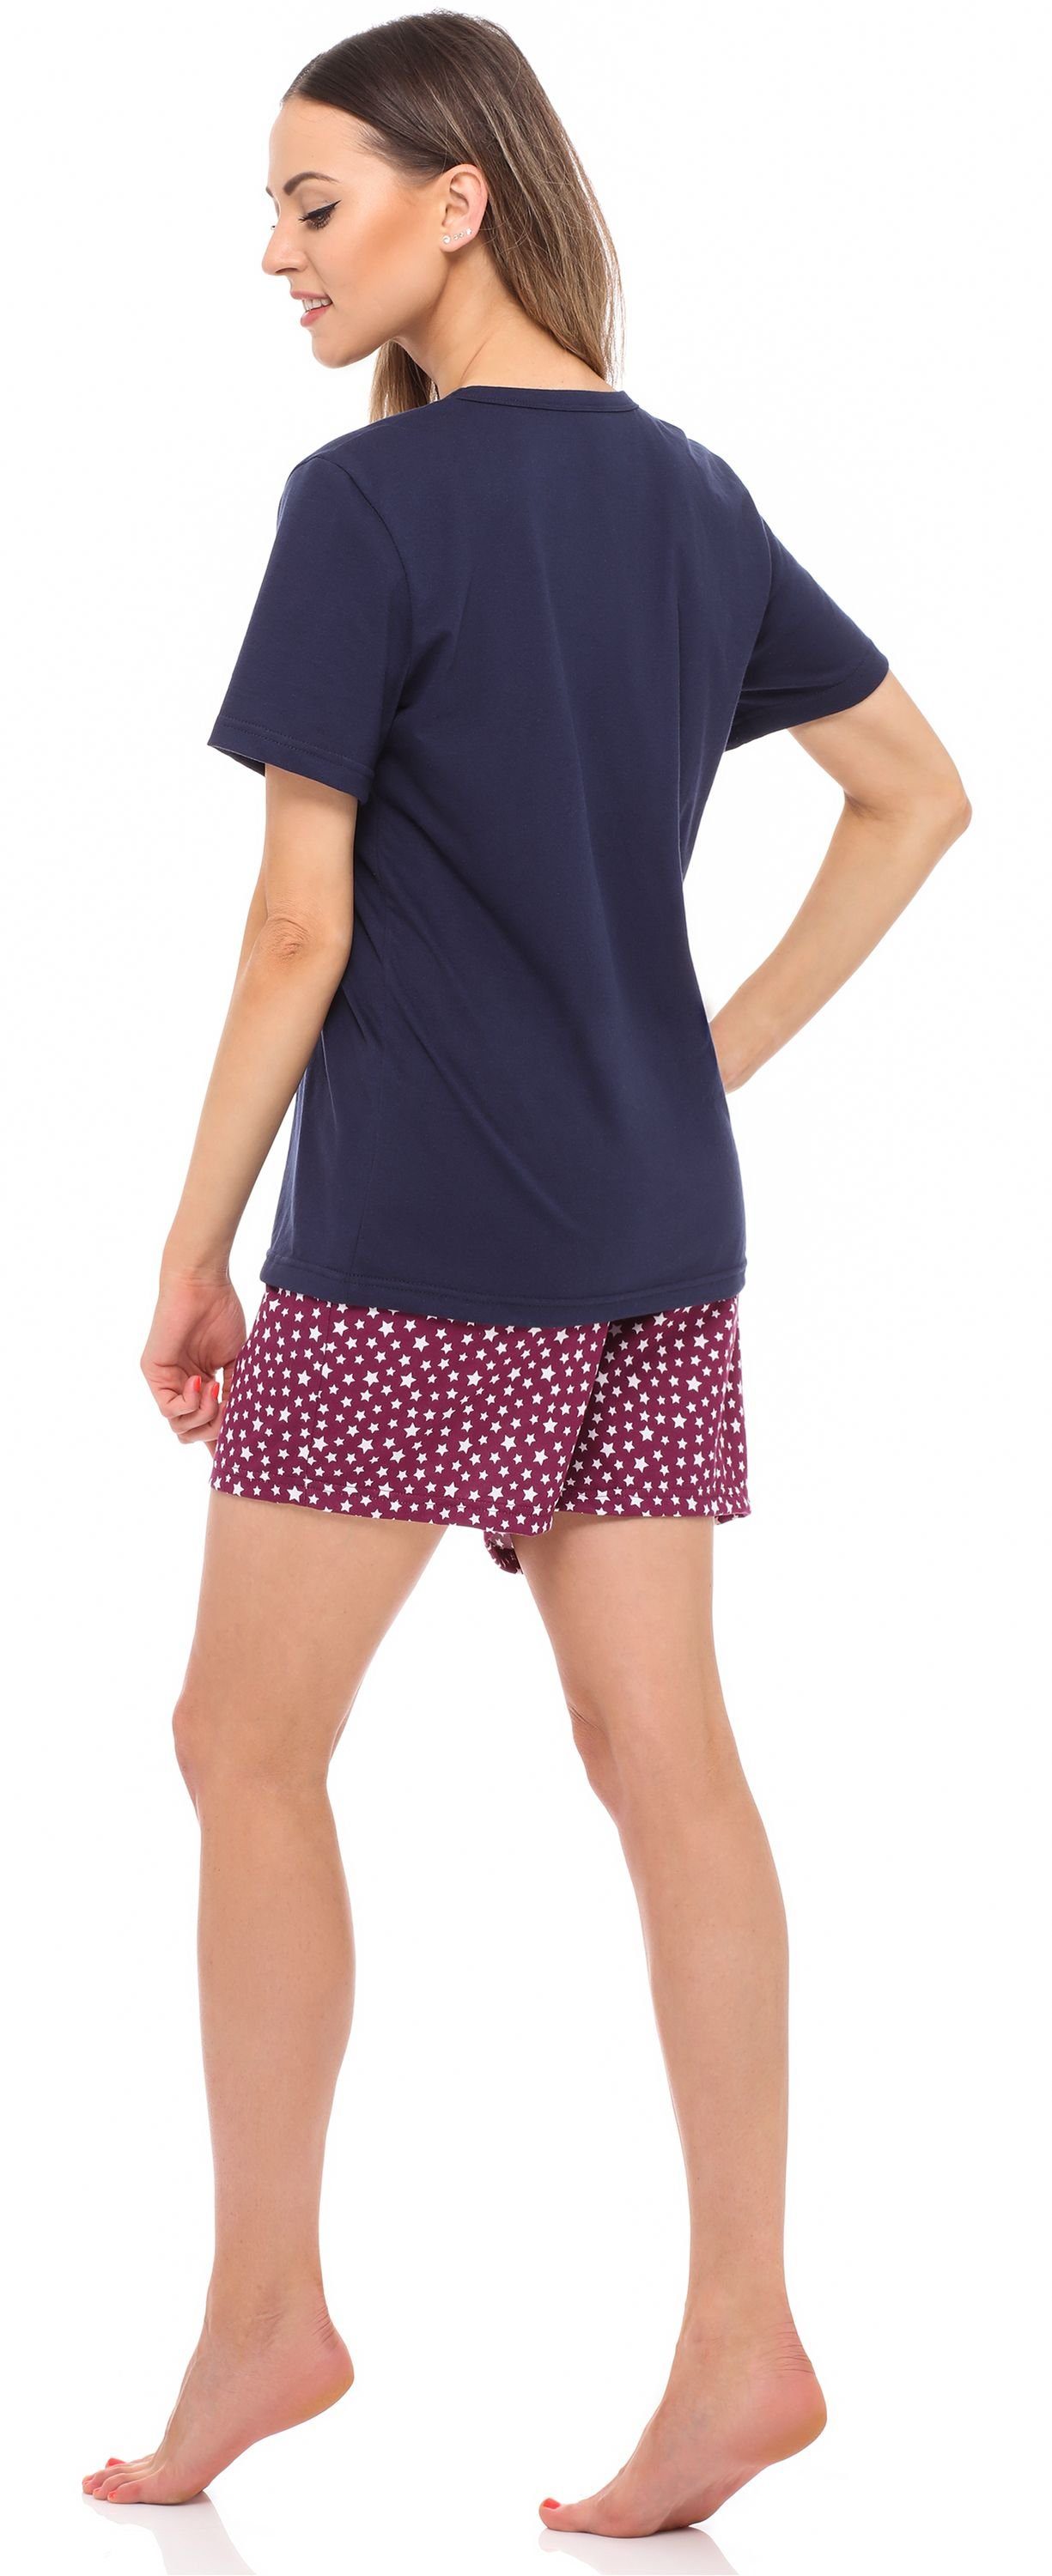 Style Marineblau/Weinrot/Sterne Schlafanzug Damen MS10-177 Kurz Merry Pyjama Baumwolle Set Schlafanzug Zweiteiler Pyjama